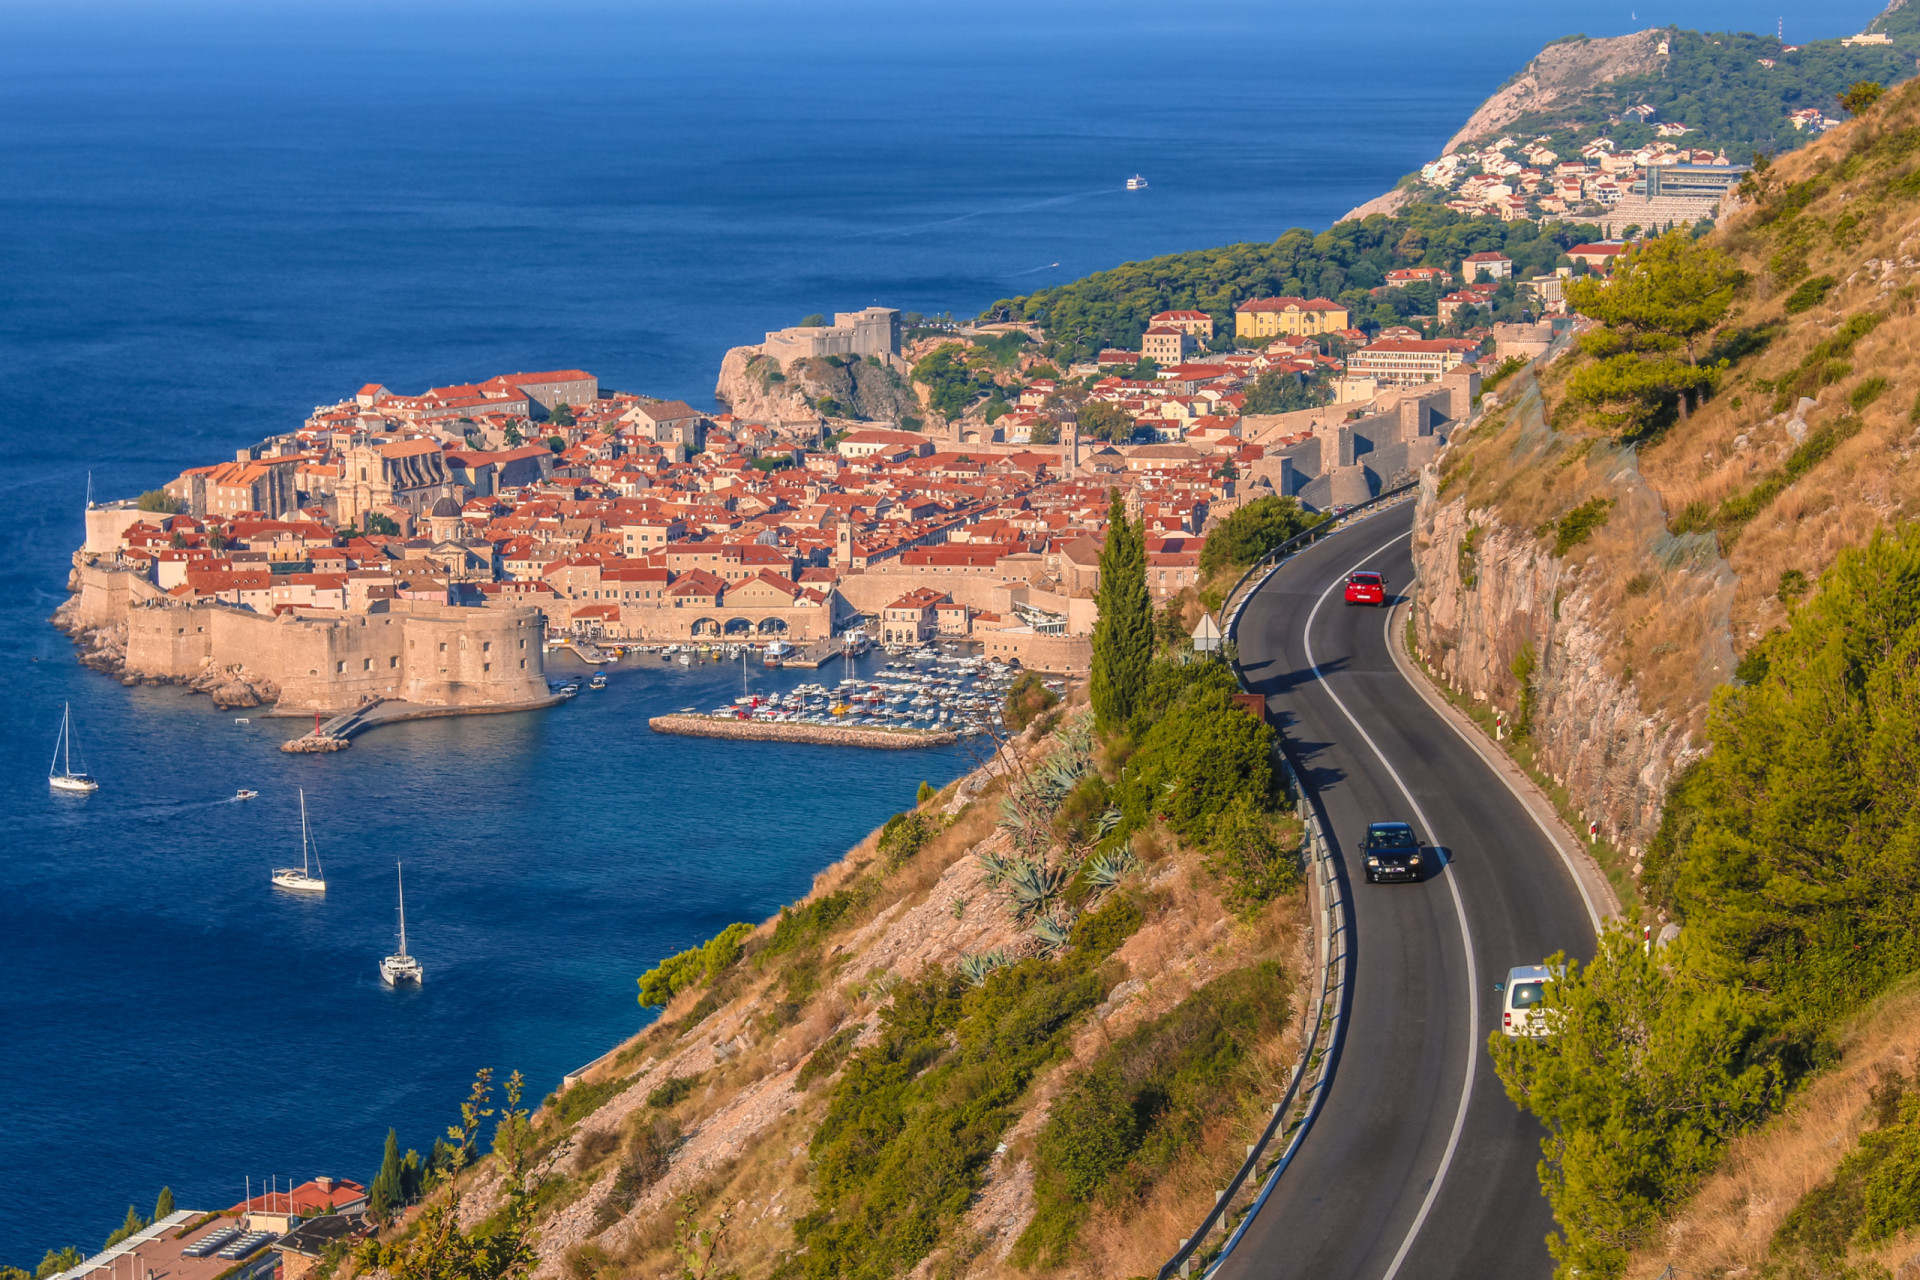 <p>Également connue sous le nom de Jadranska Magistrala, cette perle croate, une route de 650 km de long, est l'un des voyages les plus inoubliables de la région. Elle traverse de nombreux points touristiques, notamment la ville portuaire de Dubrovnik. </p><p><a href="https://www.msn.com/fr-fr/community/channel/vid-7xx8mnucu55yw63we9va2gwr7uihbxwc68fxqp25x6tg4ftibpra?cvid=94631541bc0f4f89bfd59158d696ad7e">Suivez-nous et accédez tous les jours à du contenu exclusif</a></p>